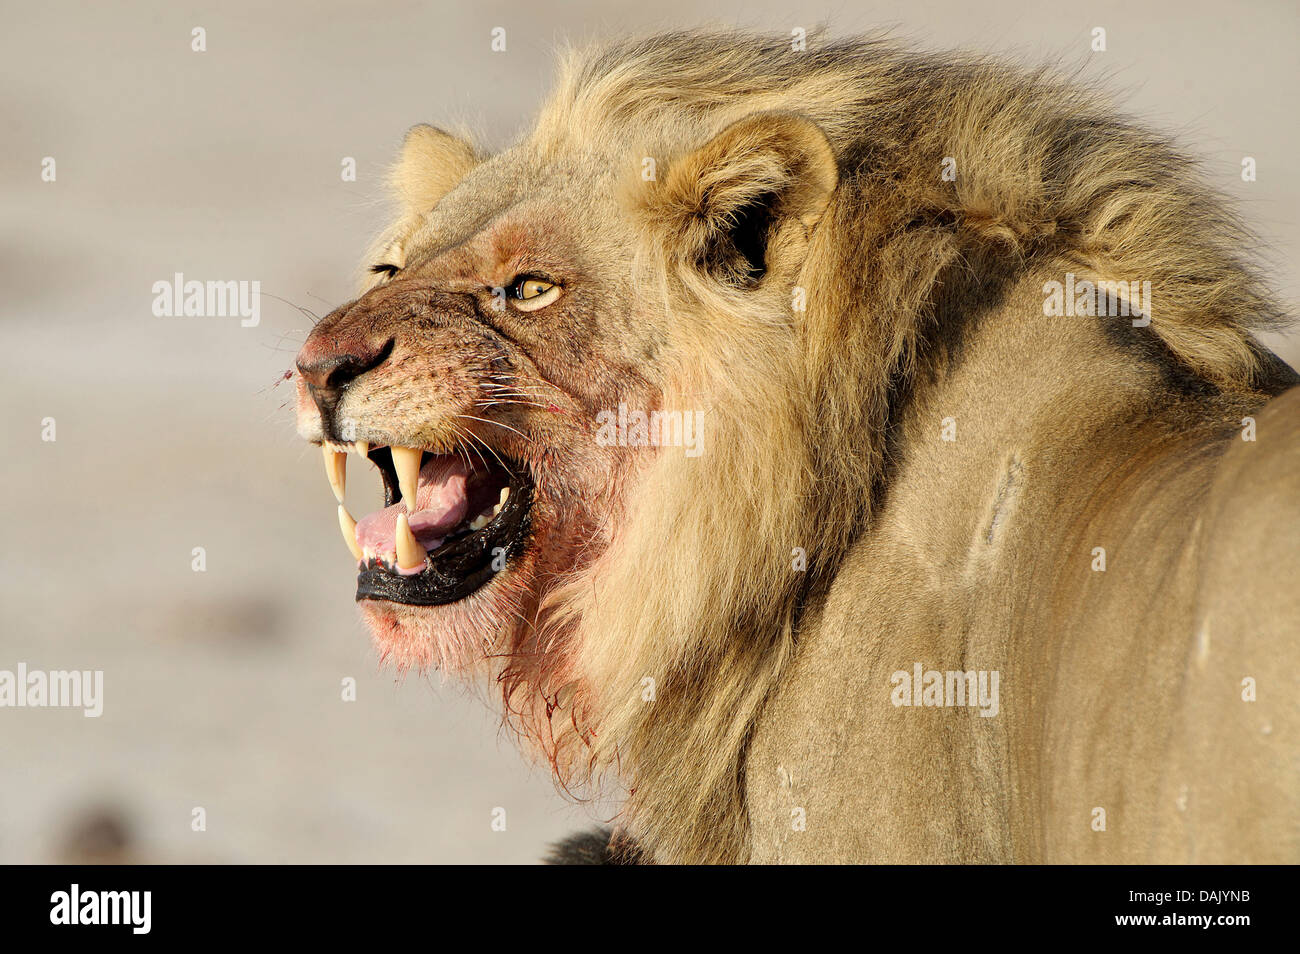 Lion (Panthera leo), homme avec une tête ensanglantée Banque D'Images